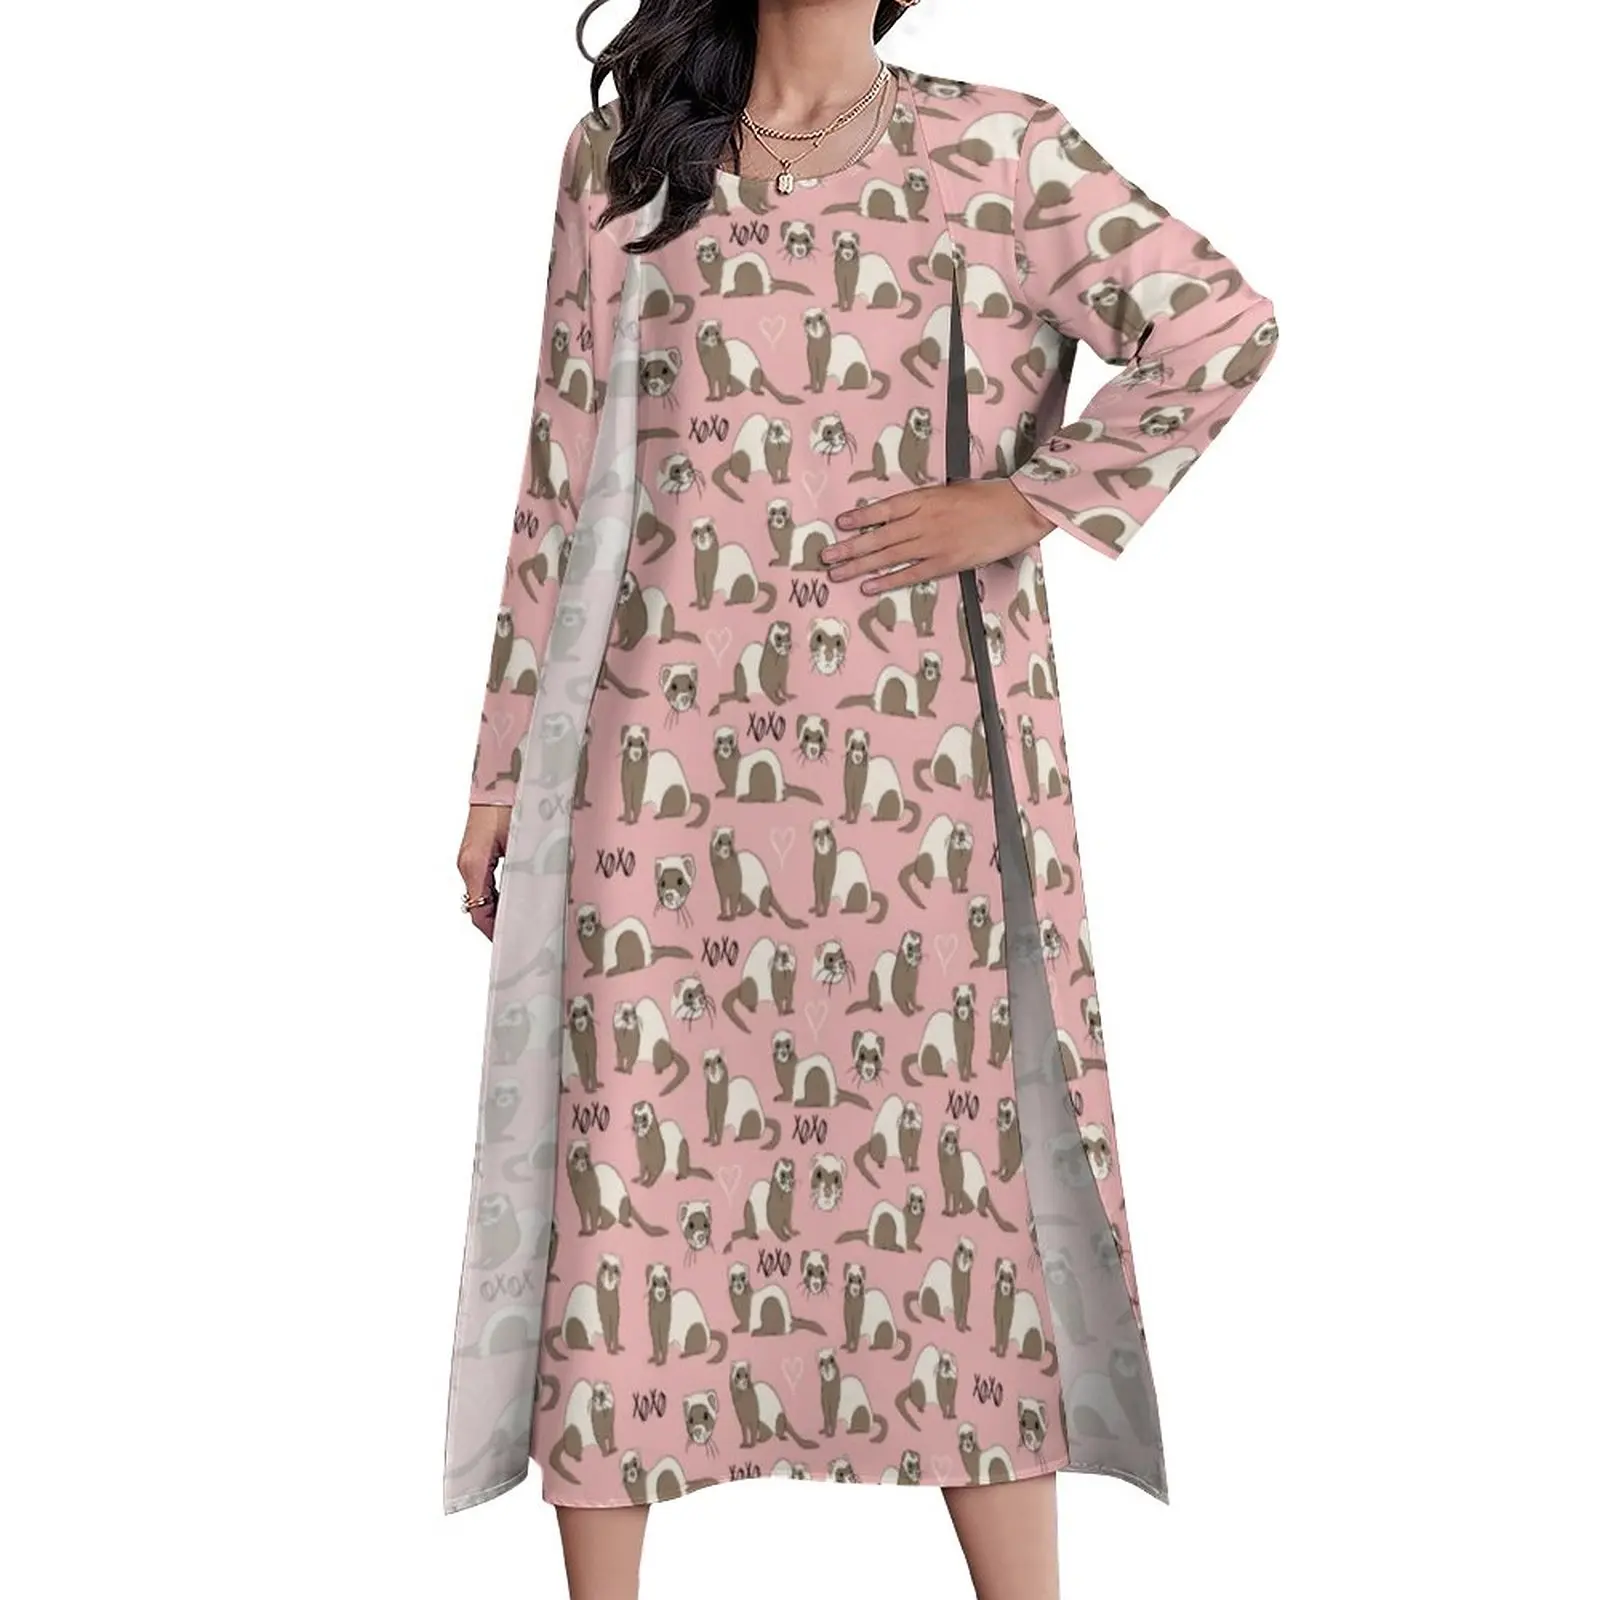 

Женское винтажное платье макси Love Ferret, розовое платье с милым принтом животных, длинное пляжное платье в стиле бохо, летнее платье с длинным рукавом